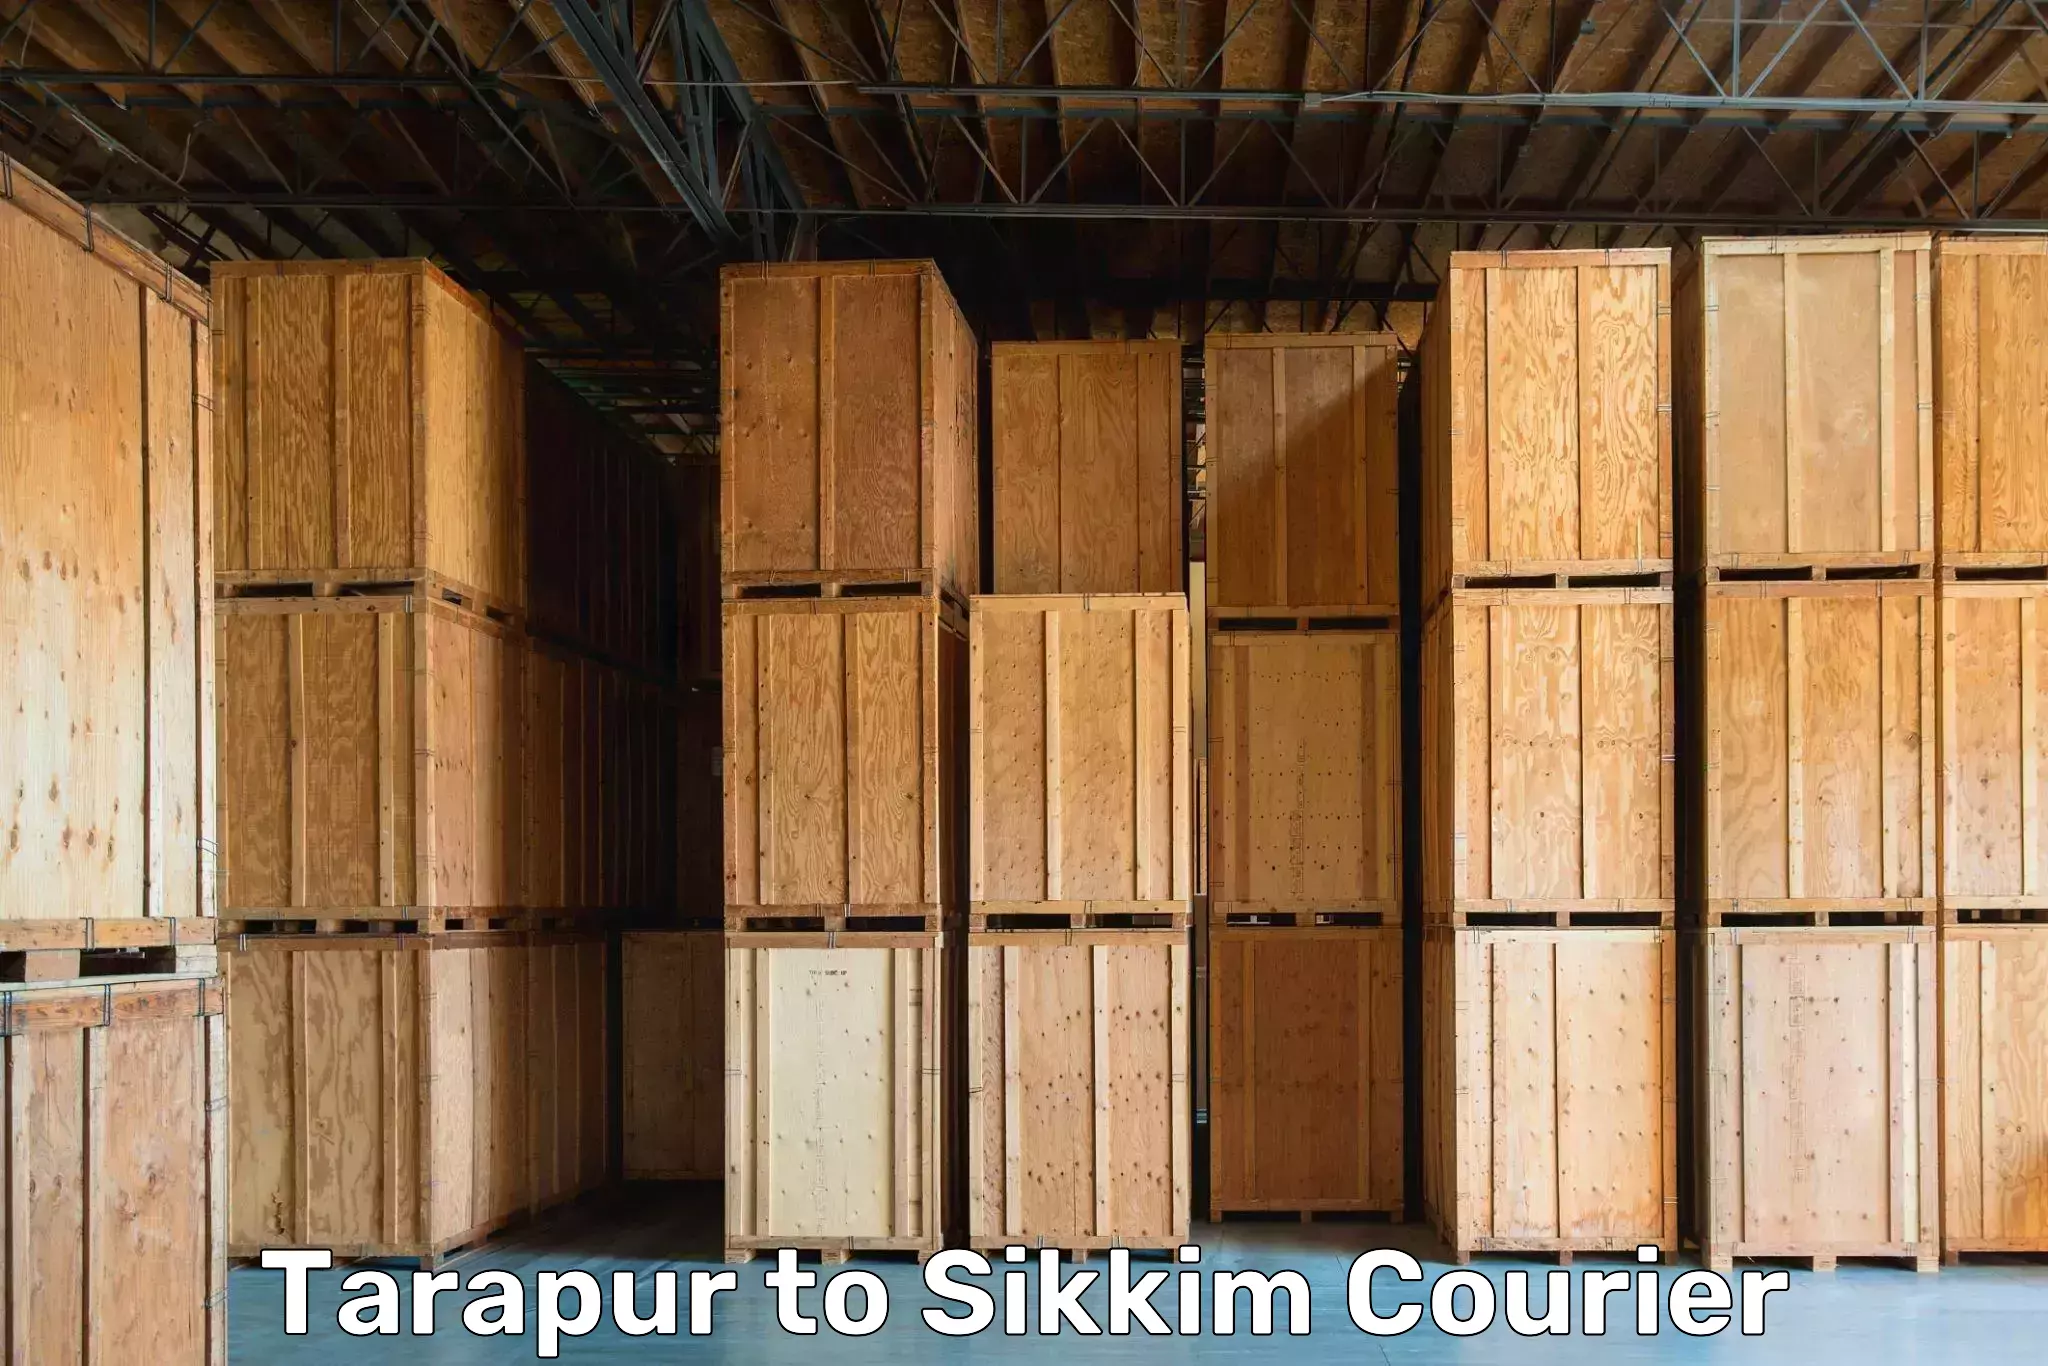 Furniture transport experts Tarapur to Mangan